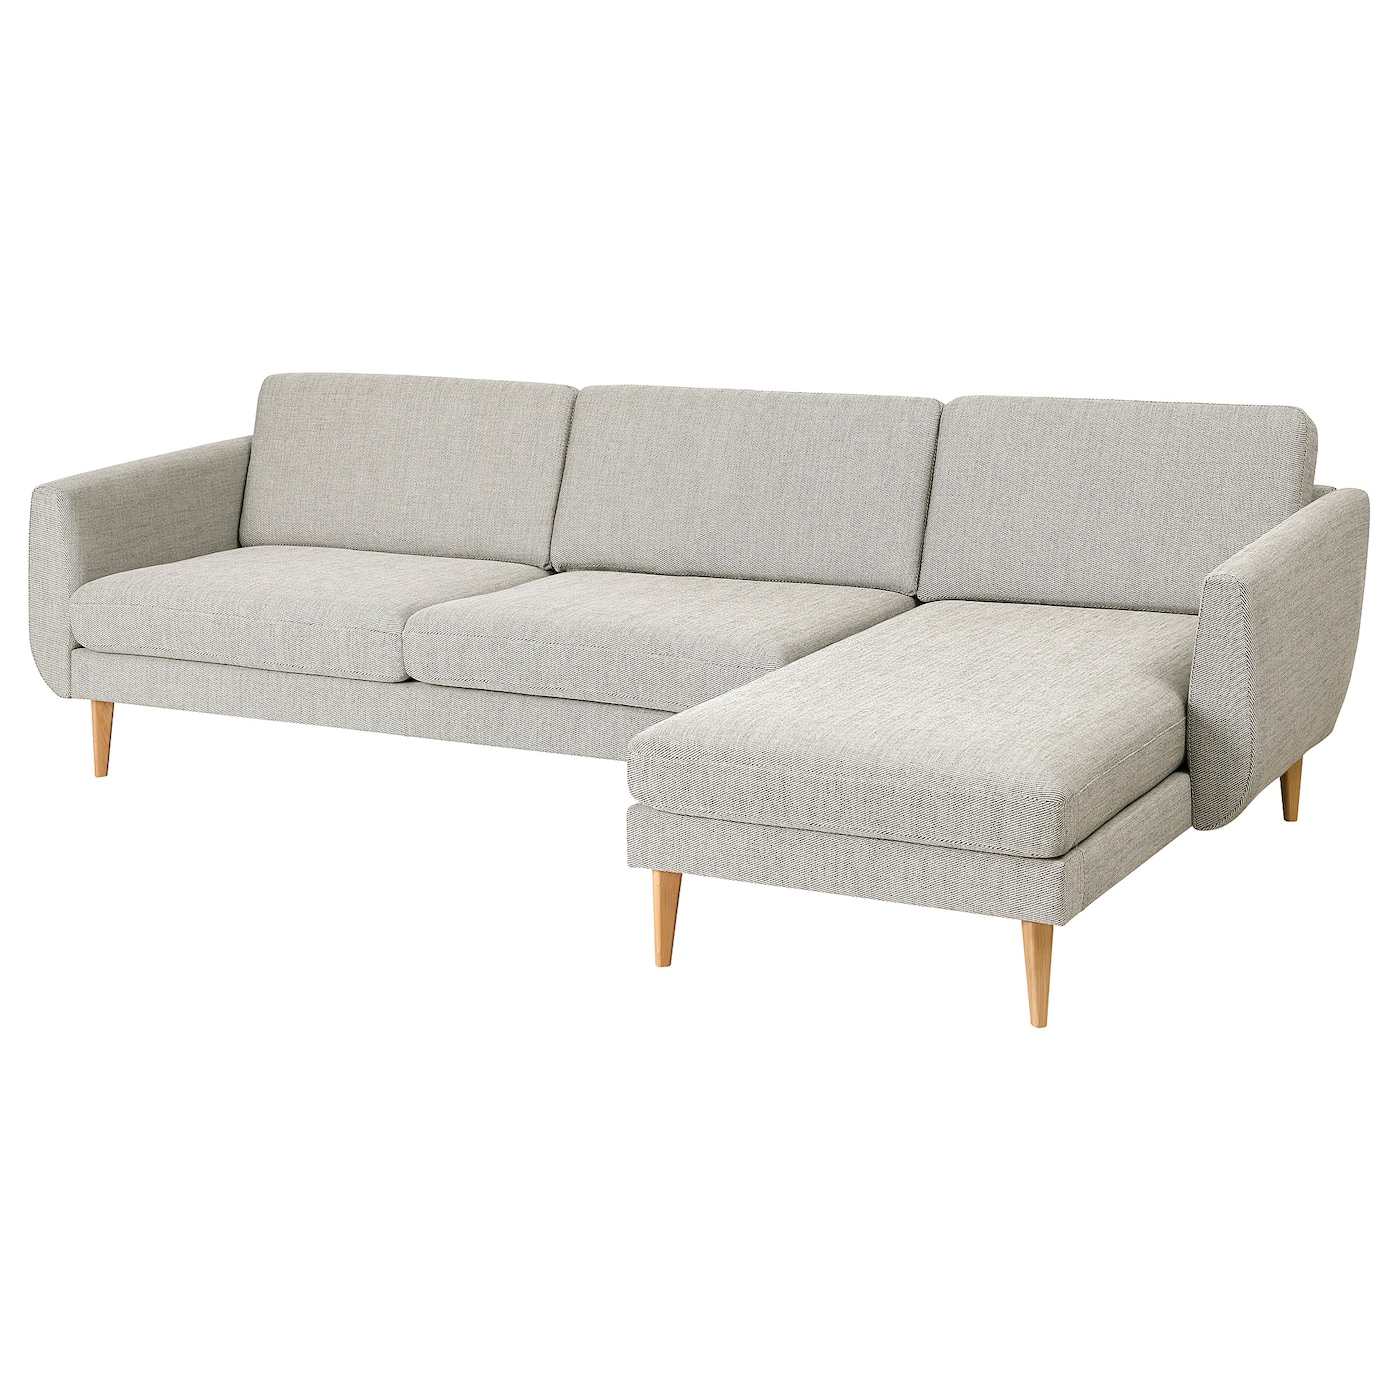 СМЕДСТОРП 4-местный диван + диван, Виарп/беж/коричневый дуб SMEDSTORP IKEA